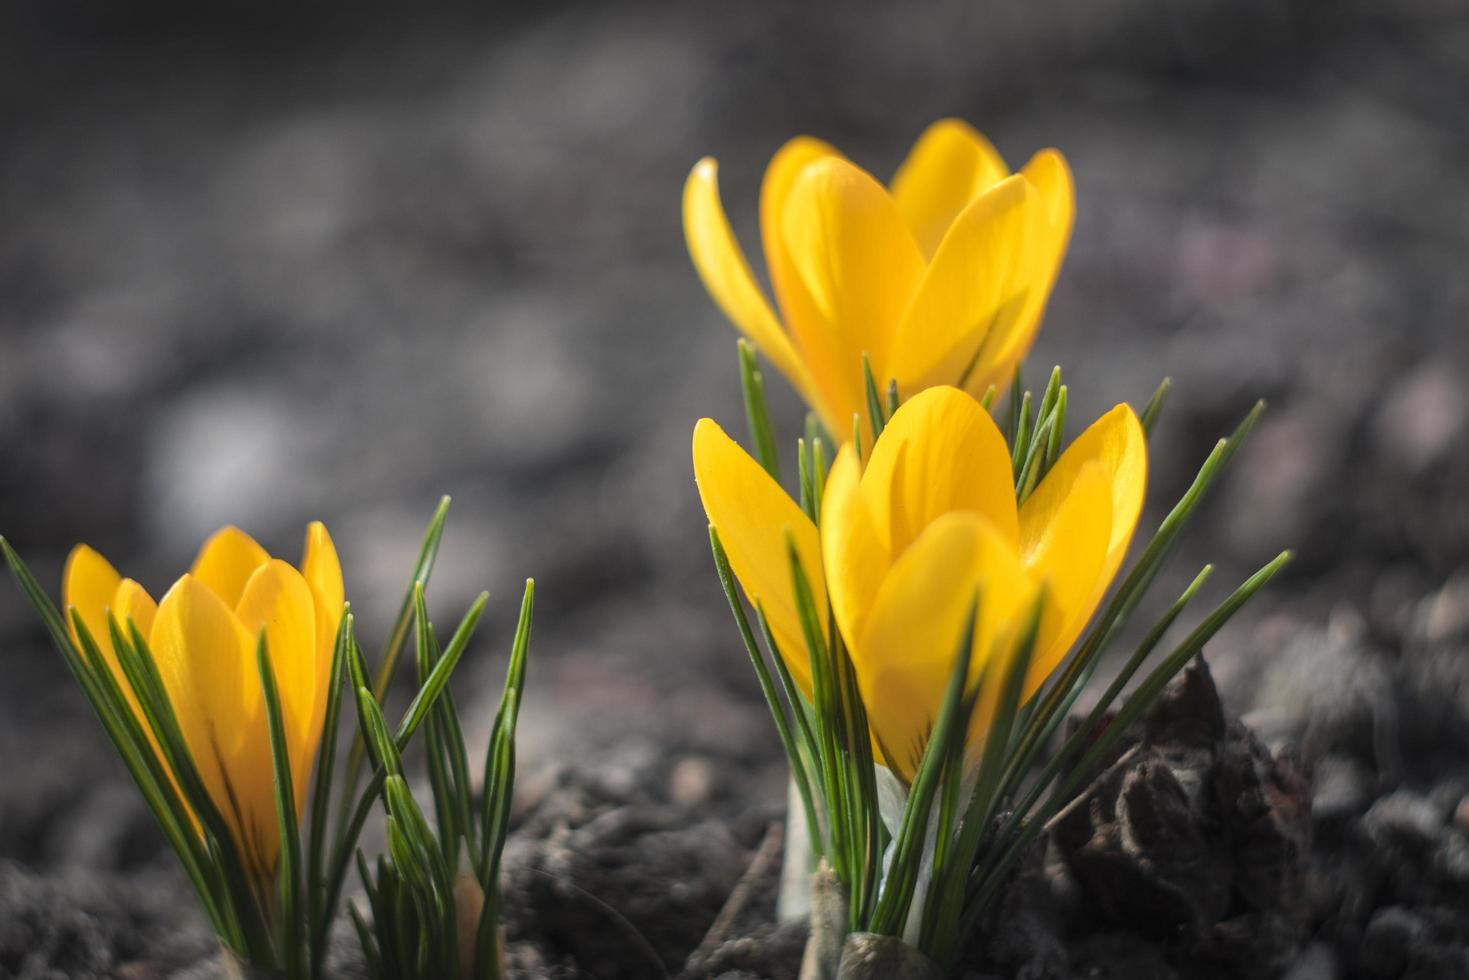 eerste lente bloemen gele krokussen foto